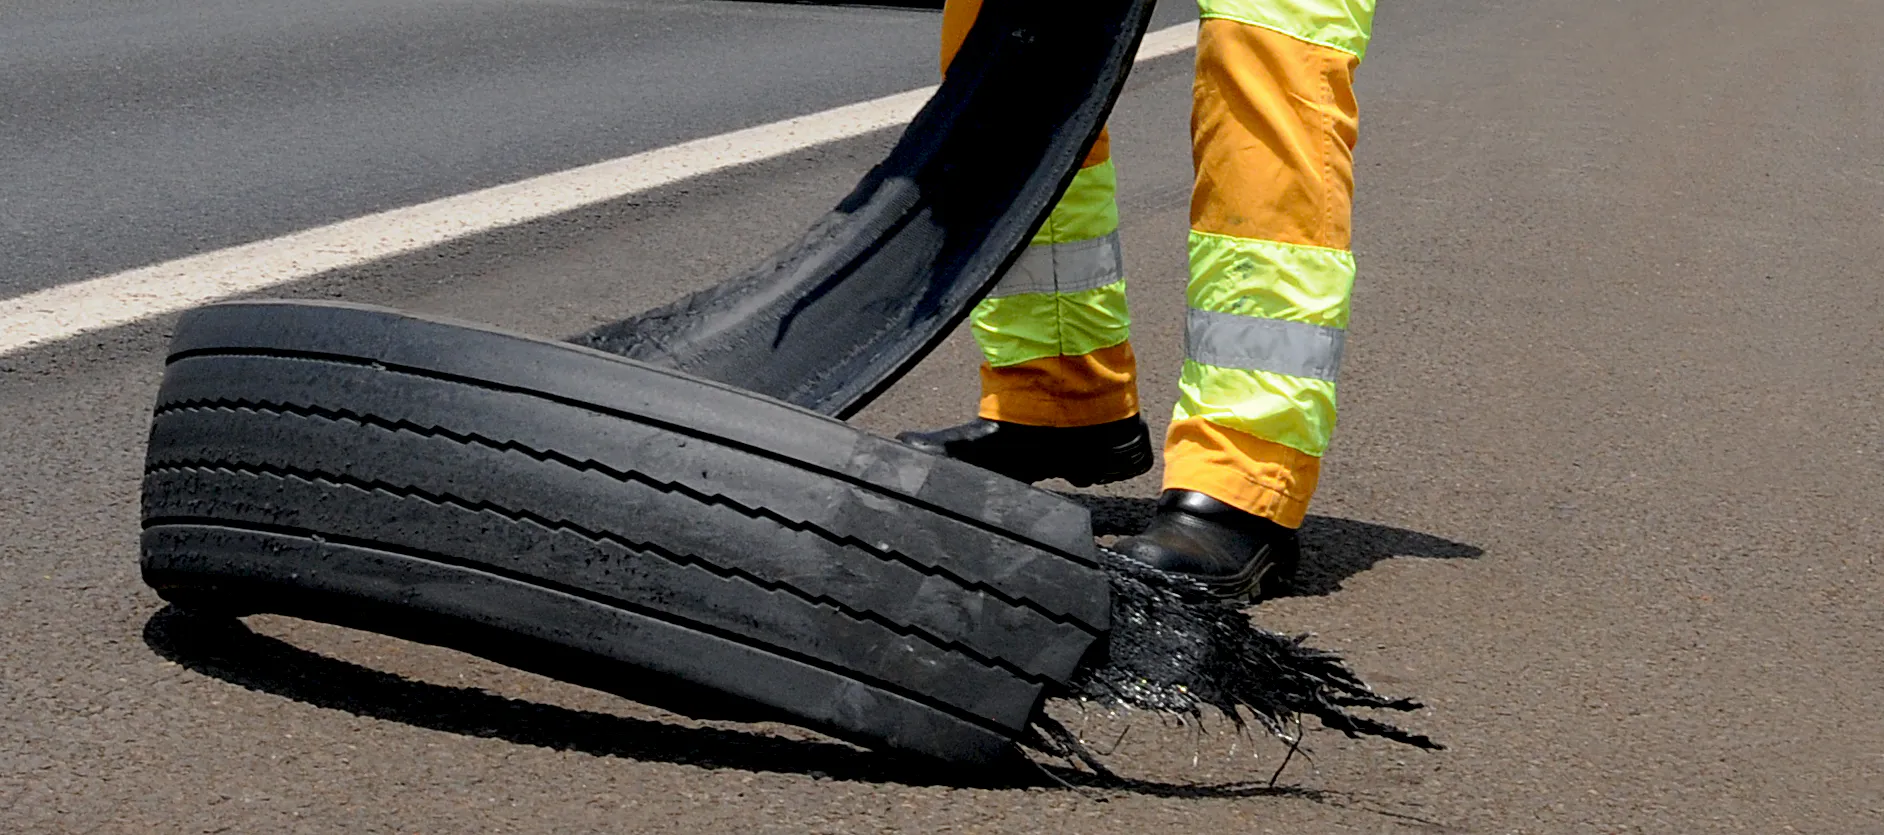 Imagem de um pneu de boracha estraçalhado em uma rodovia